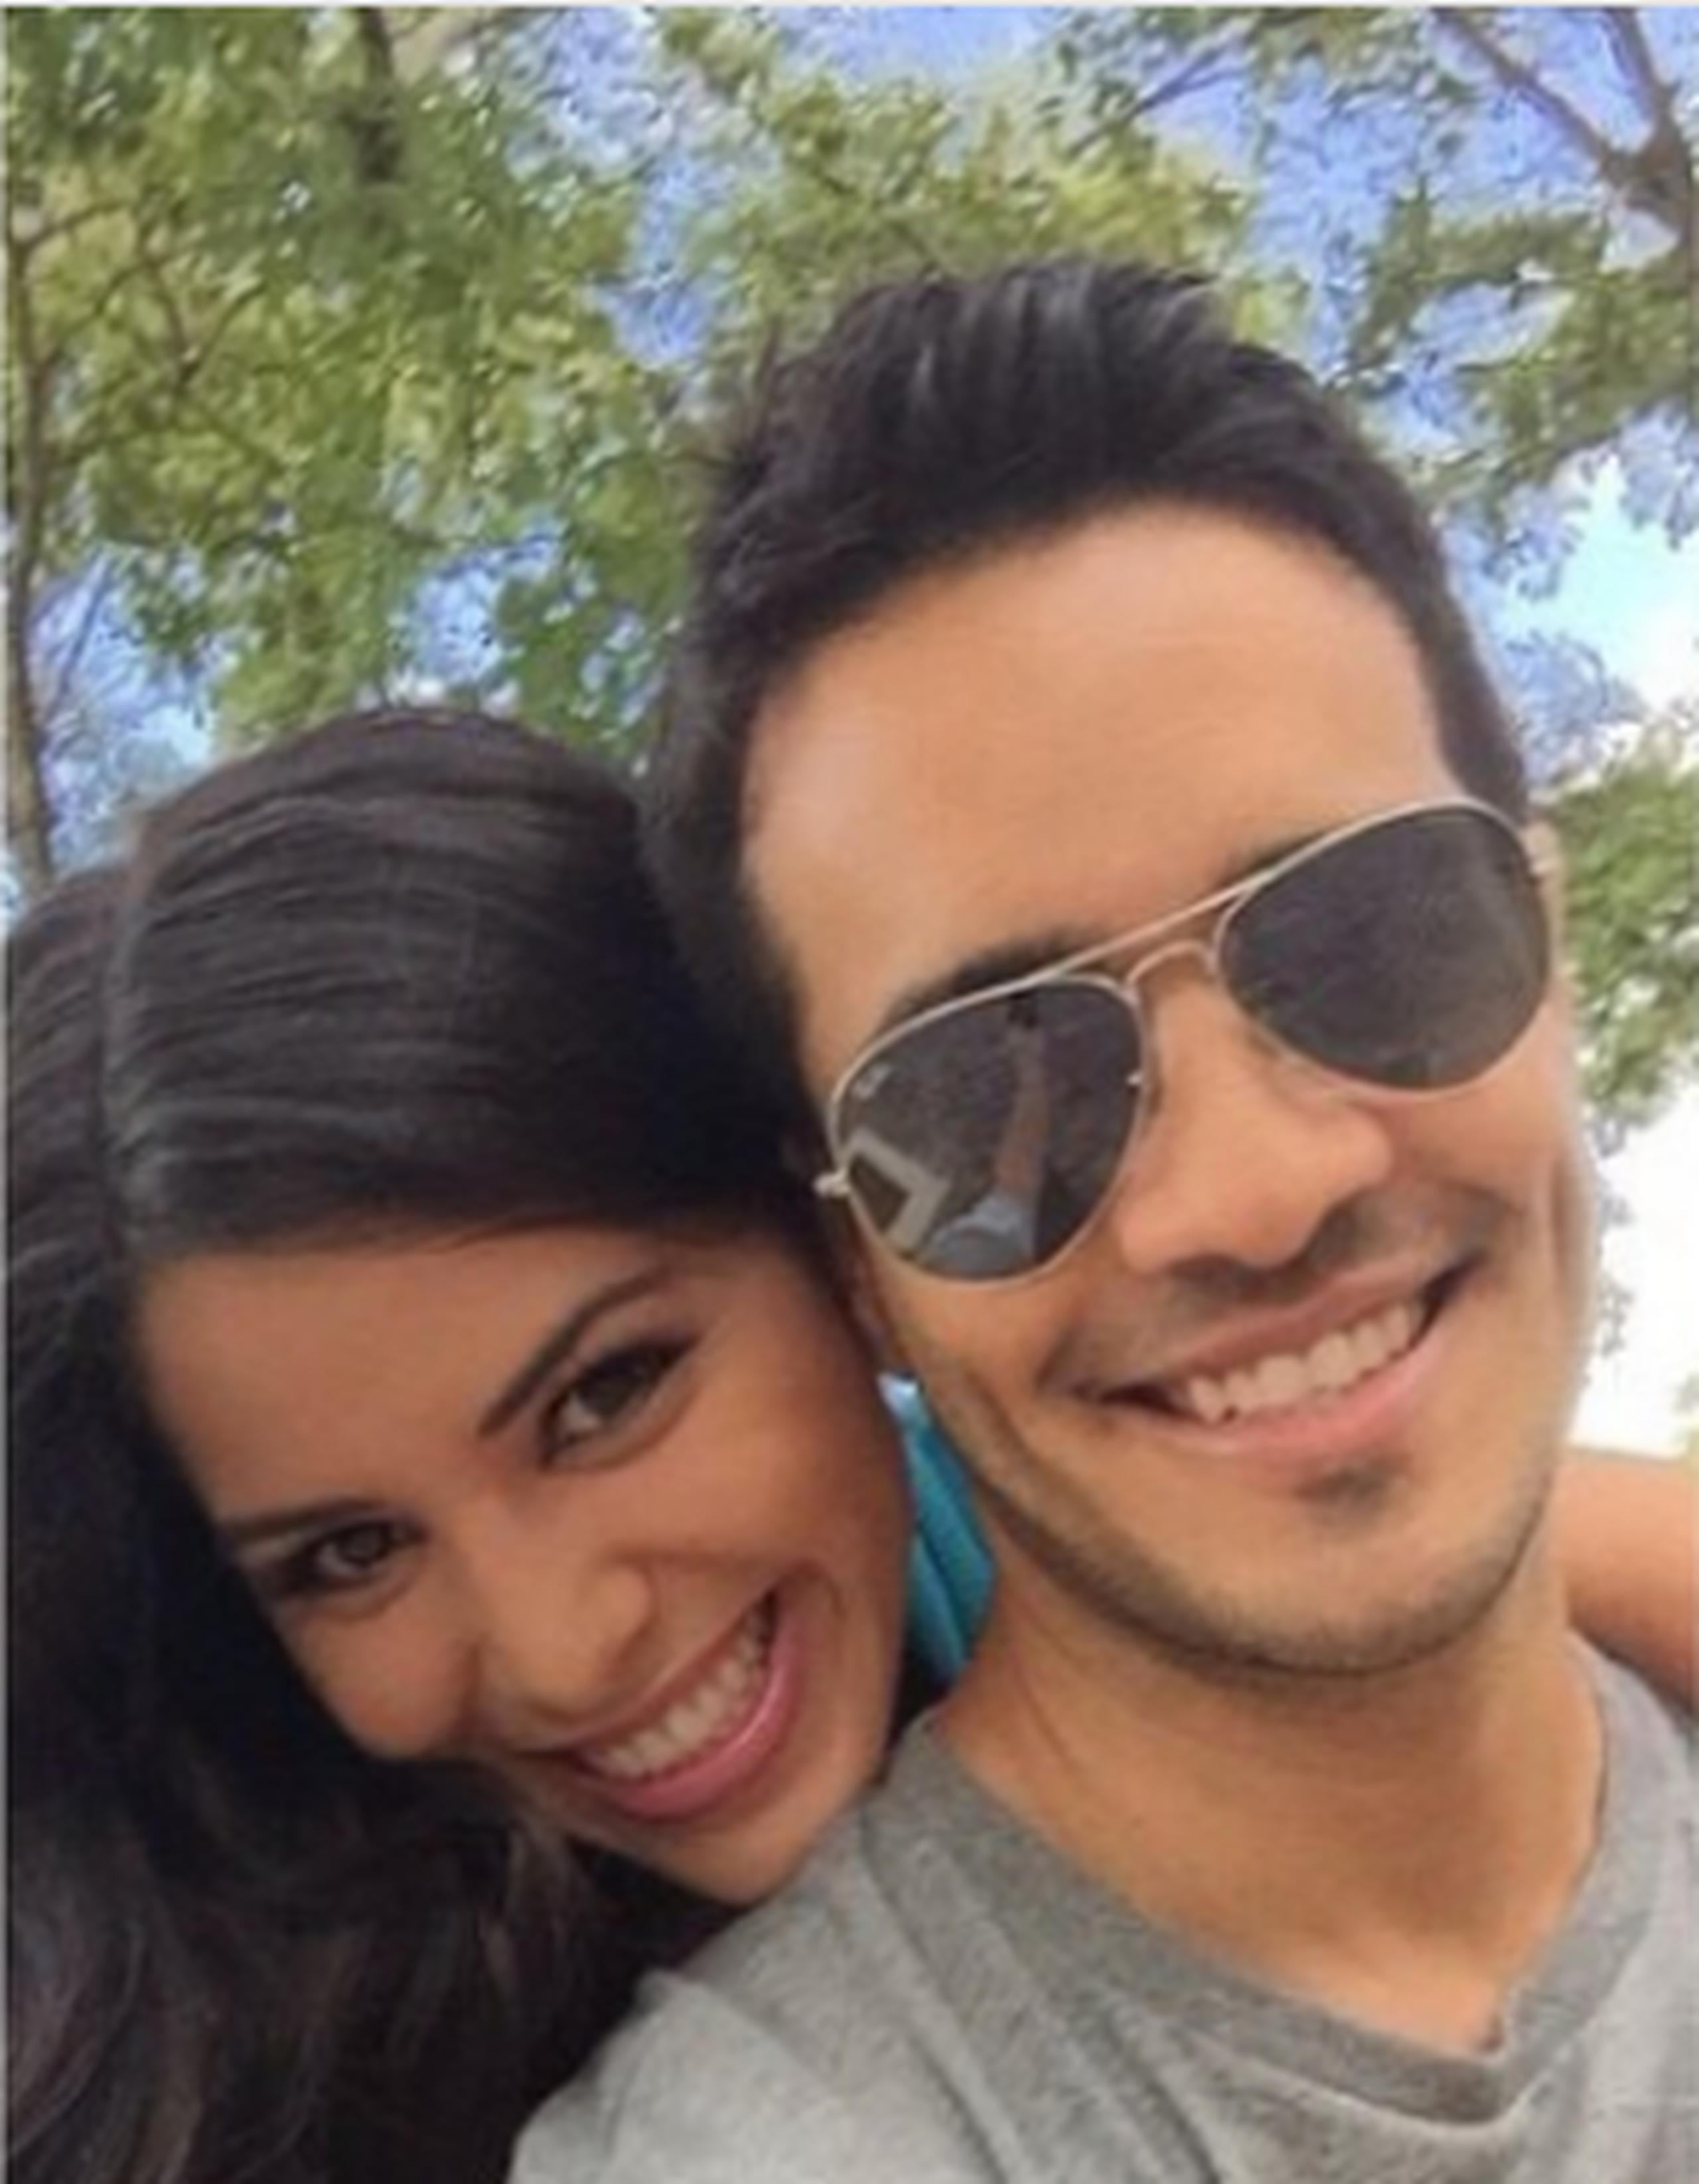 En su cuenta de Instagram, la reportera del tiempo de la cadena Telemundo en Los Ángeles compartió dos imágenes en las que aparece junto a su esposo.